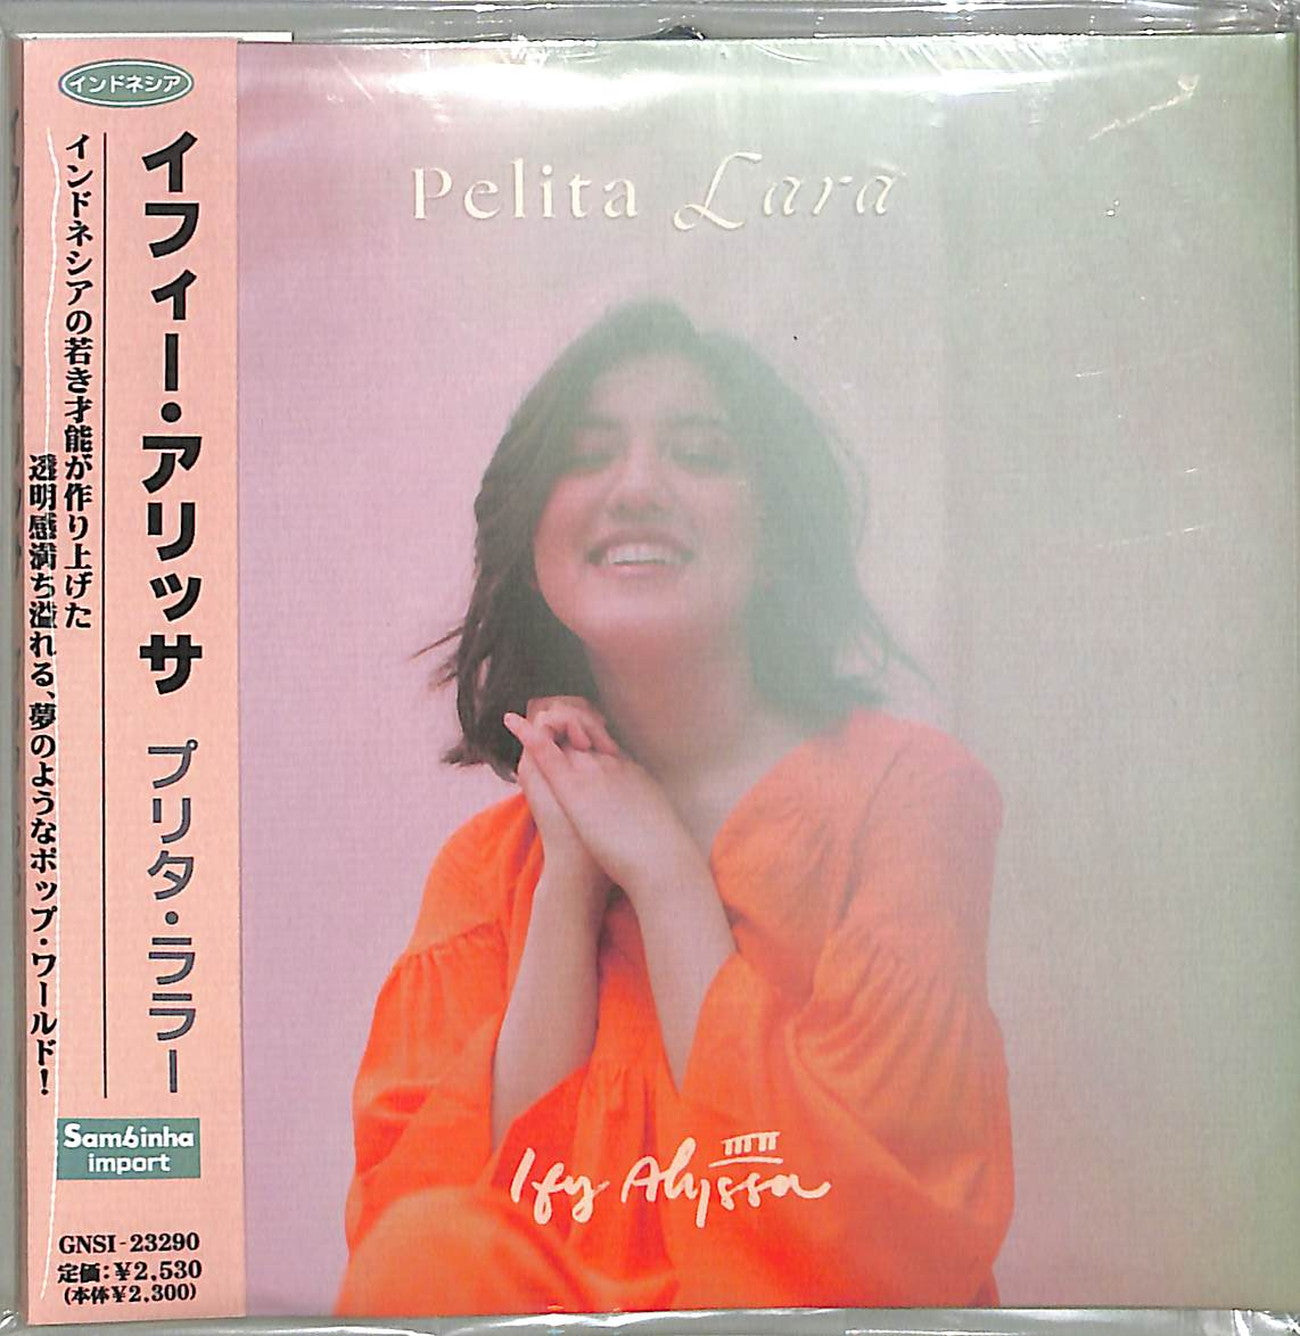 Ify Alyssa - Pelita Lara - Import CD